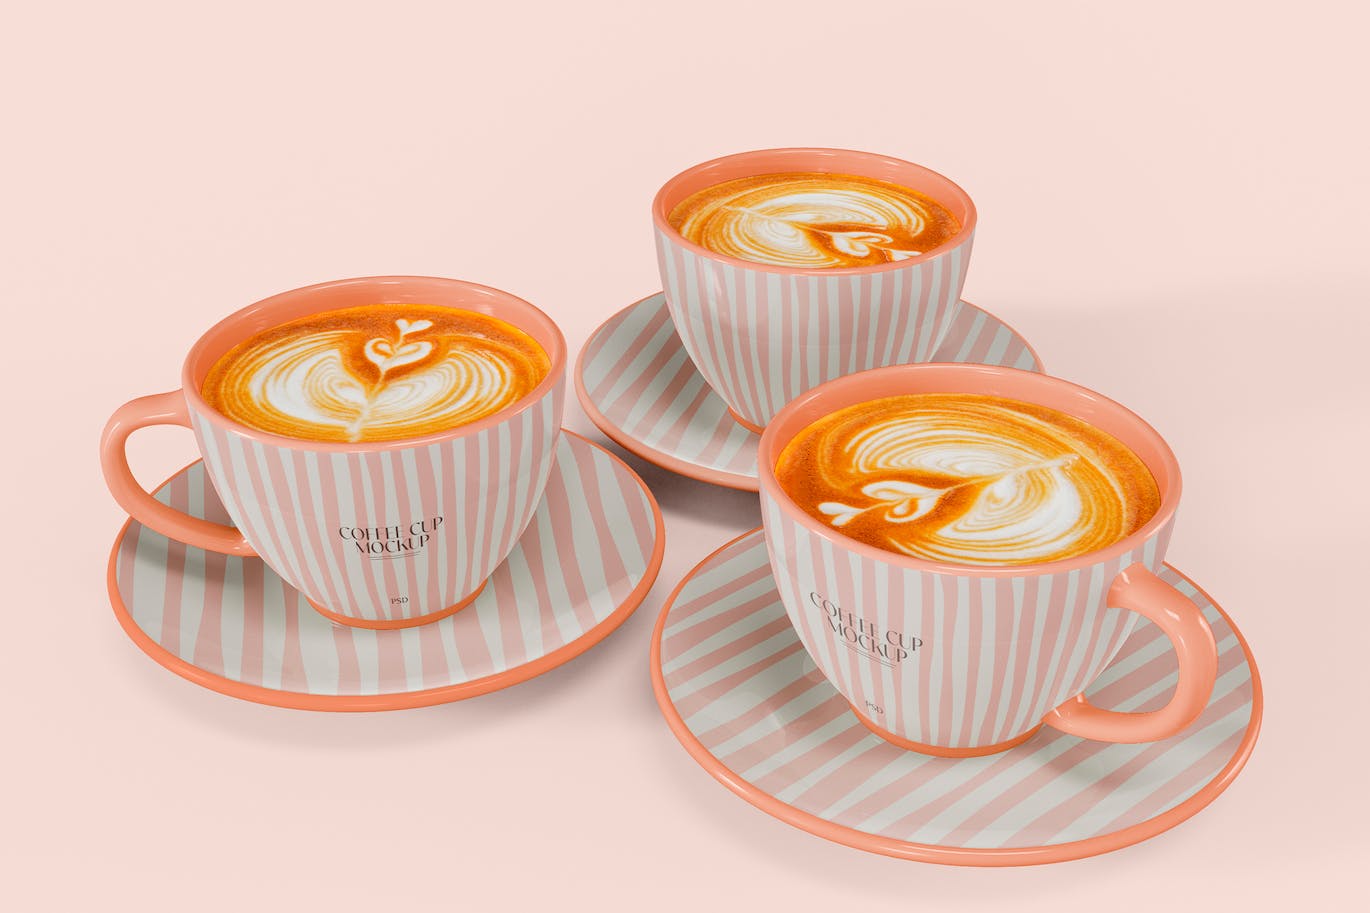 陶瓷咖啡杯设计样机图 Ceramic Mugs Mockup 样机素材 第1张